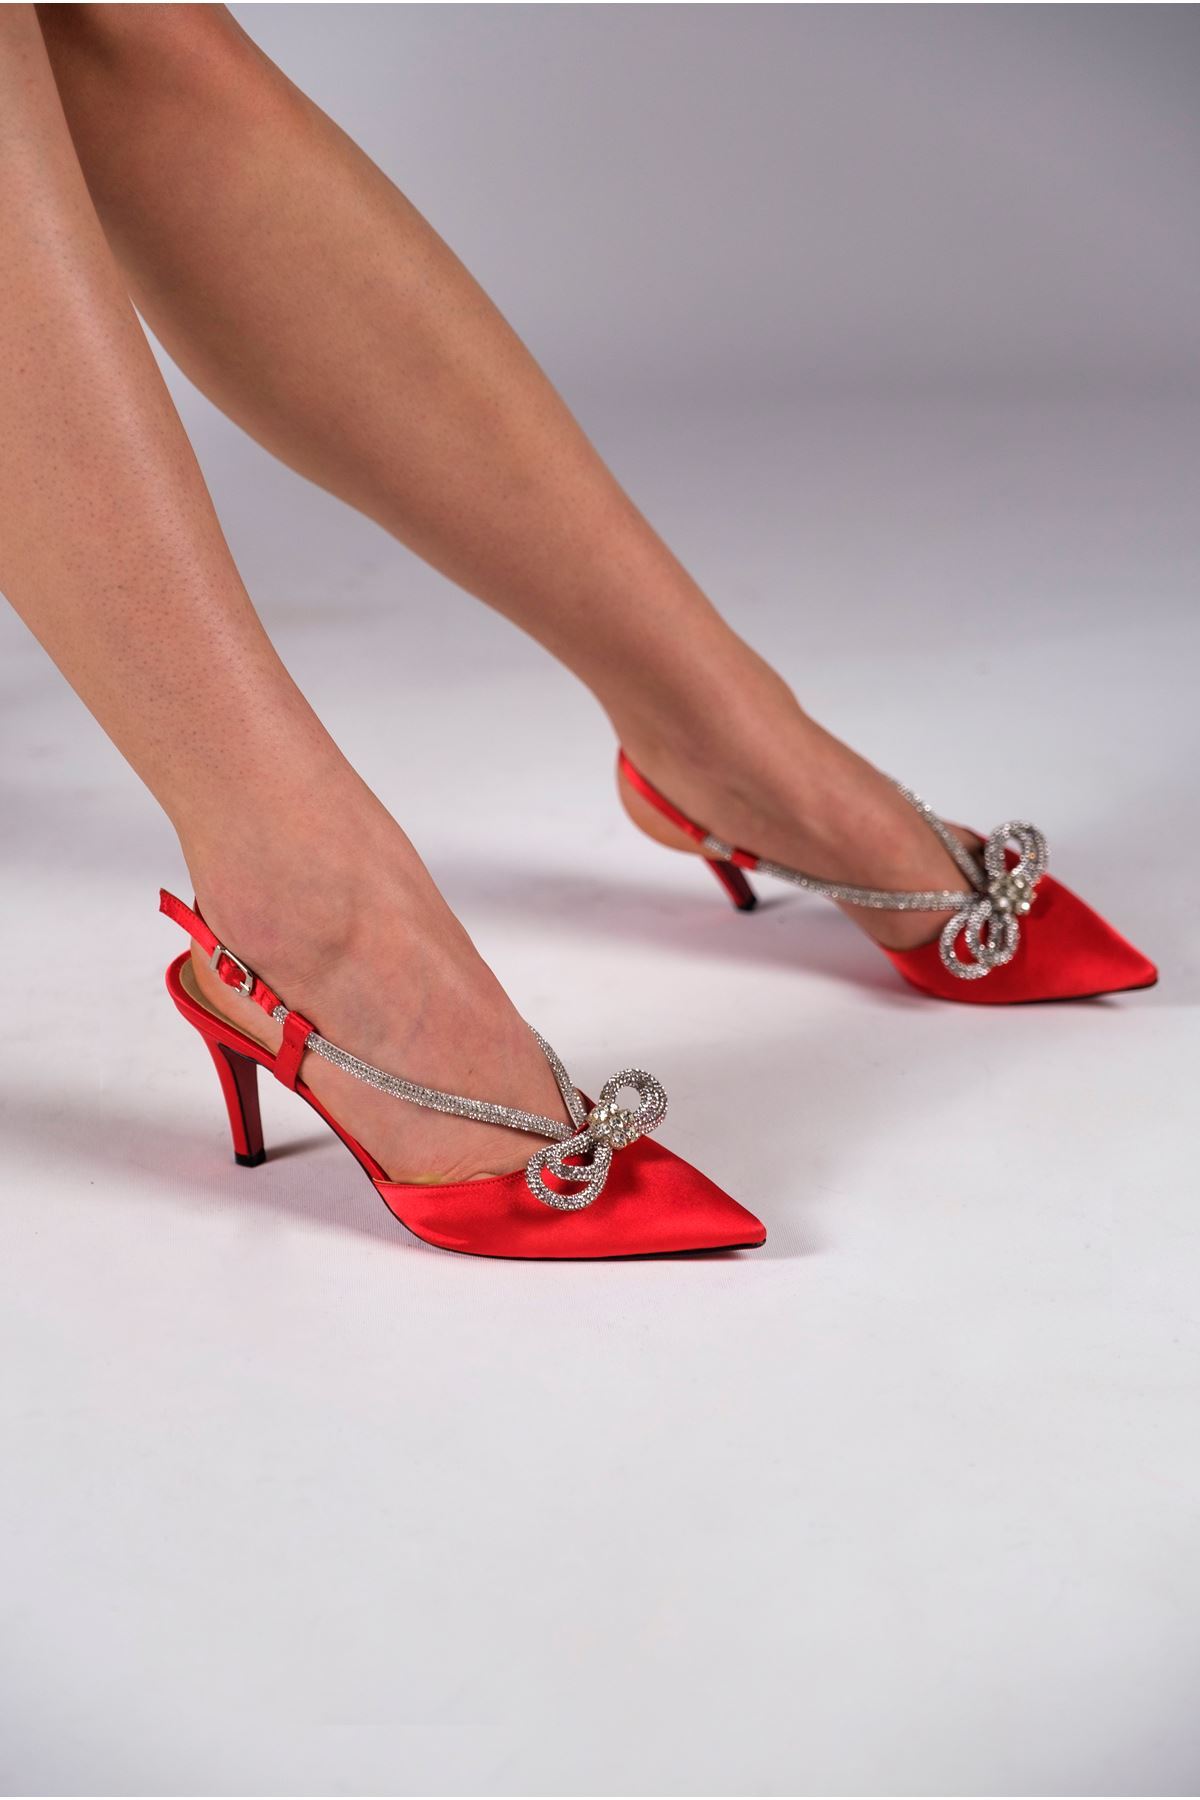 Kırmızı Saten Taş Detaylı Kadın Özel Tasarım Topuklu Ayakkabı Stiletto Ripple